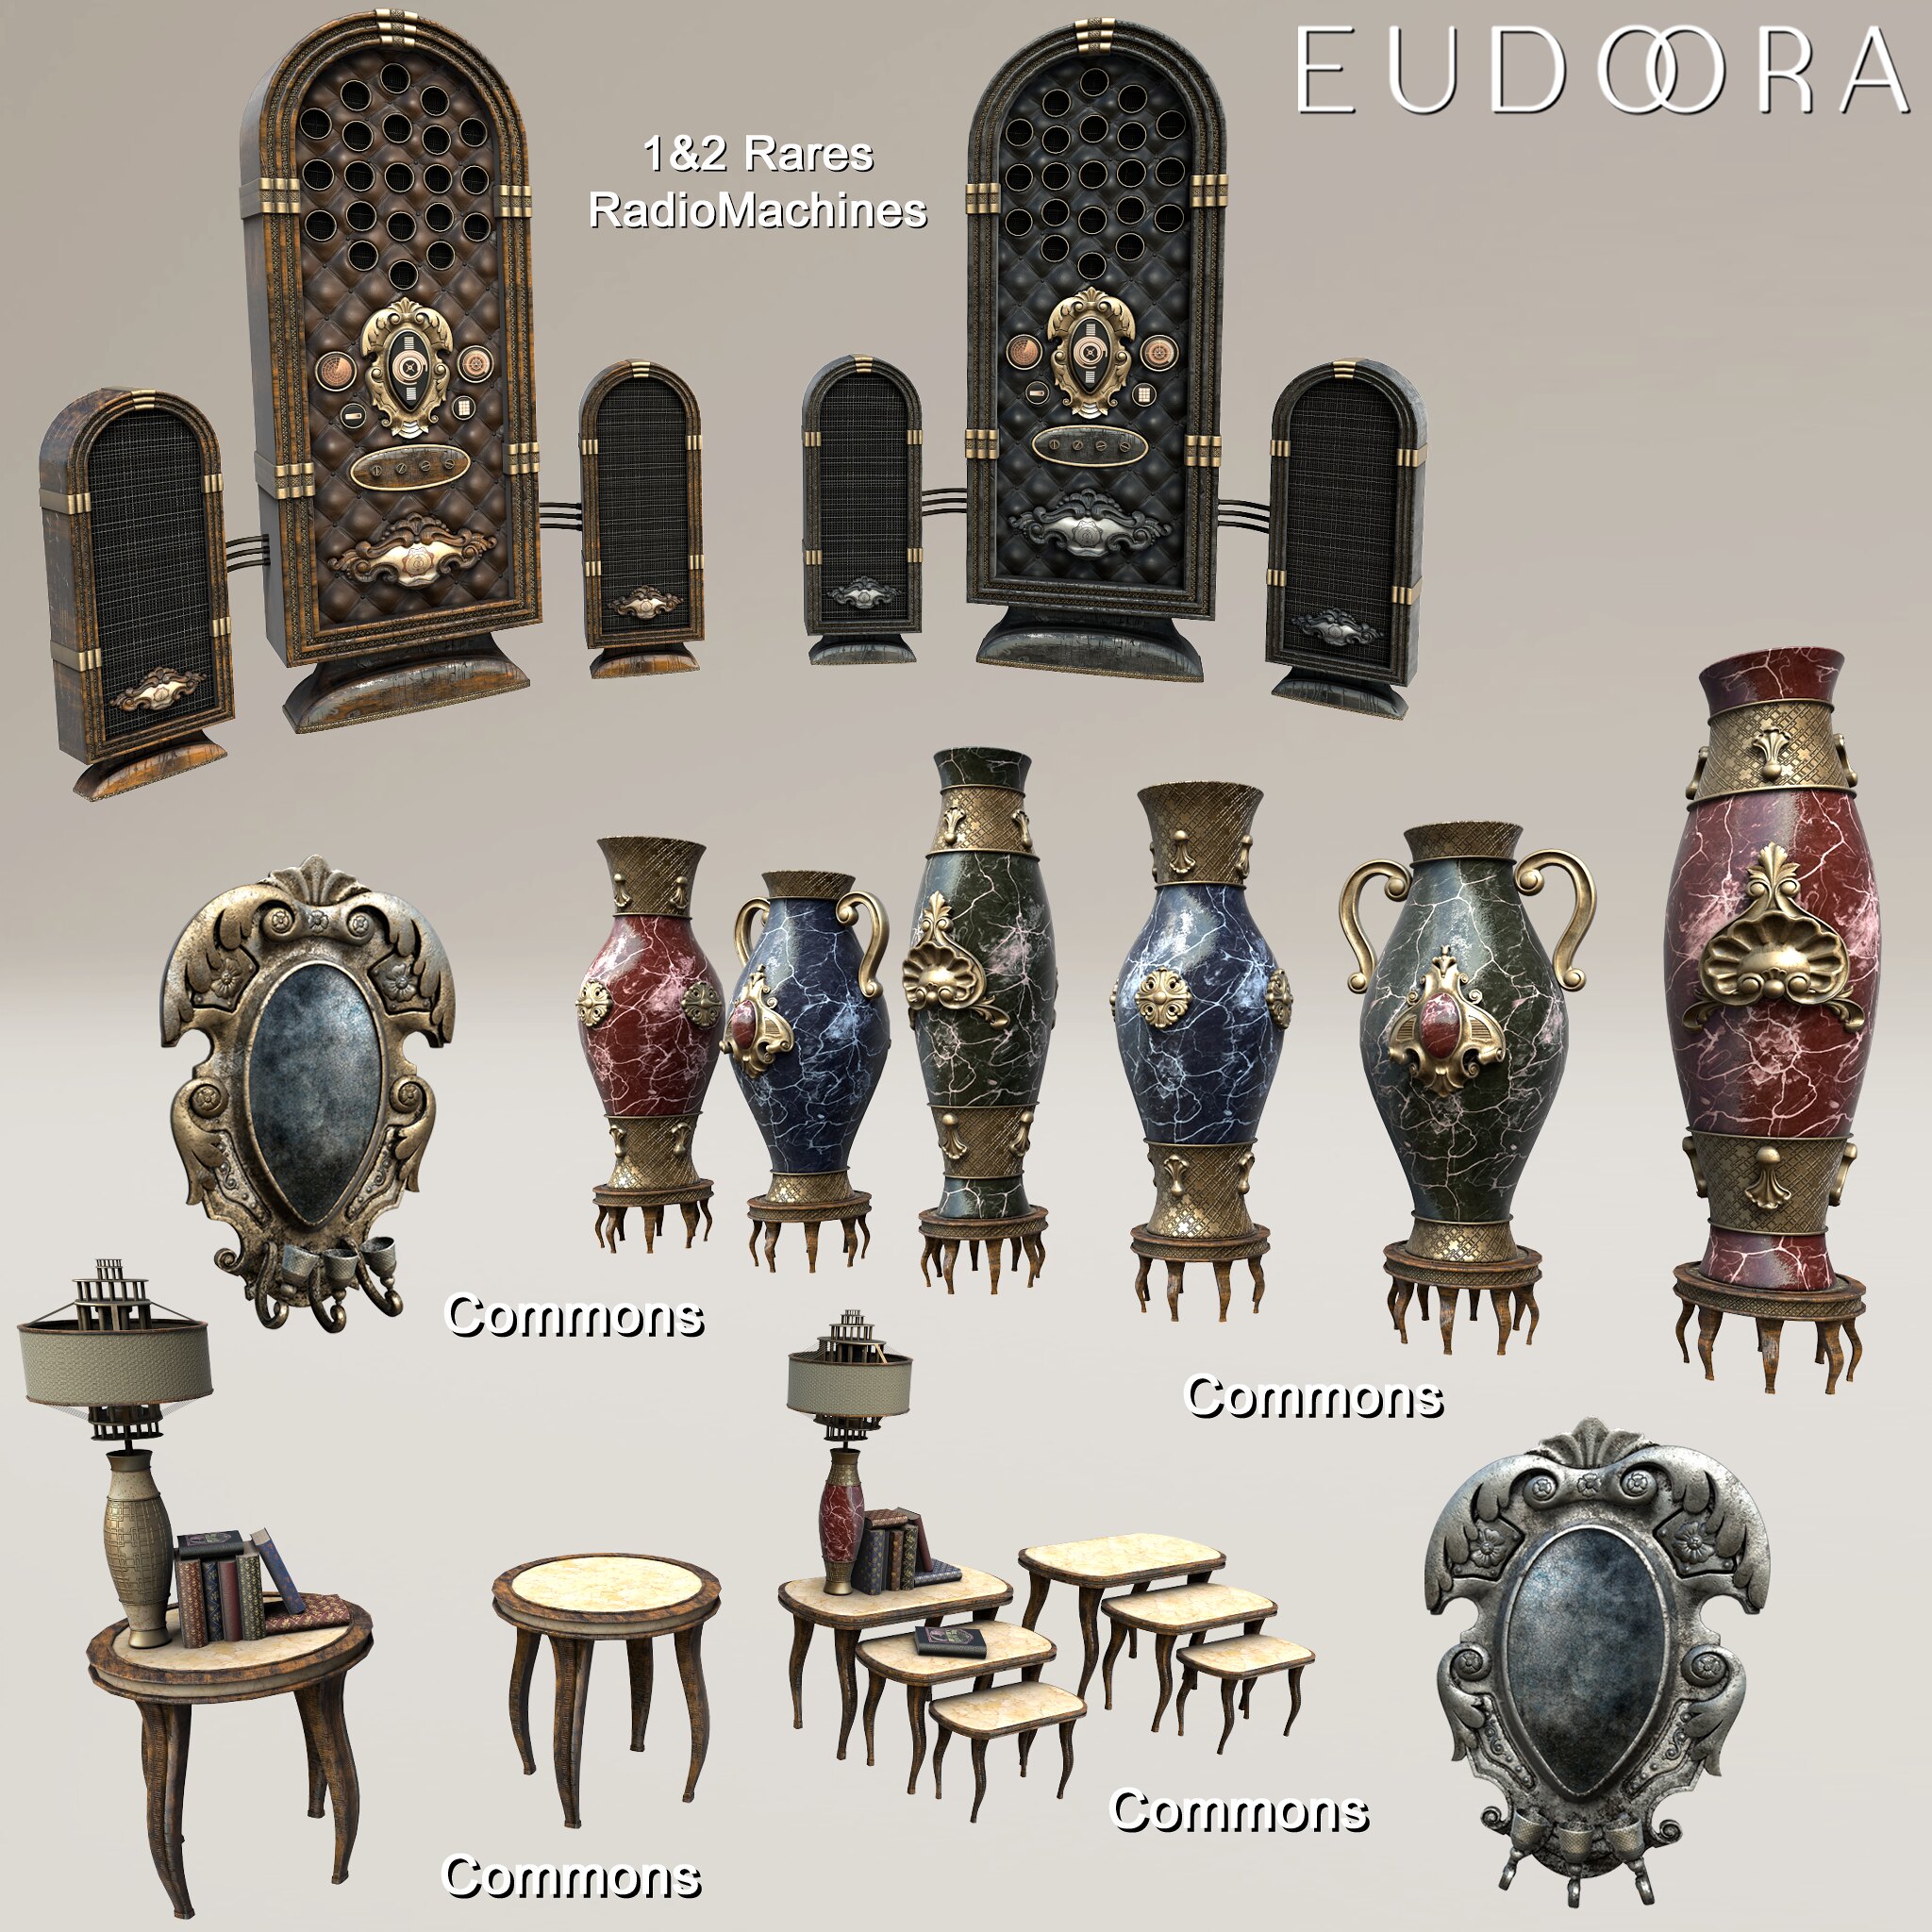 Eudora3d – Random Retro Decor Gacha